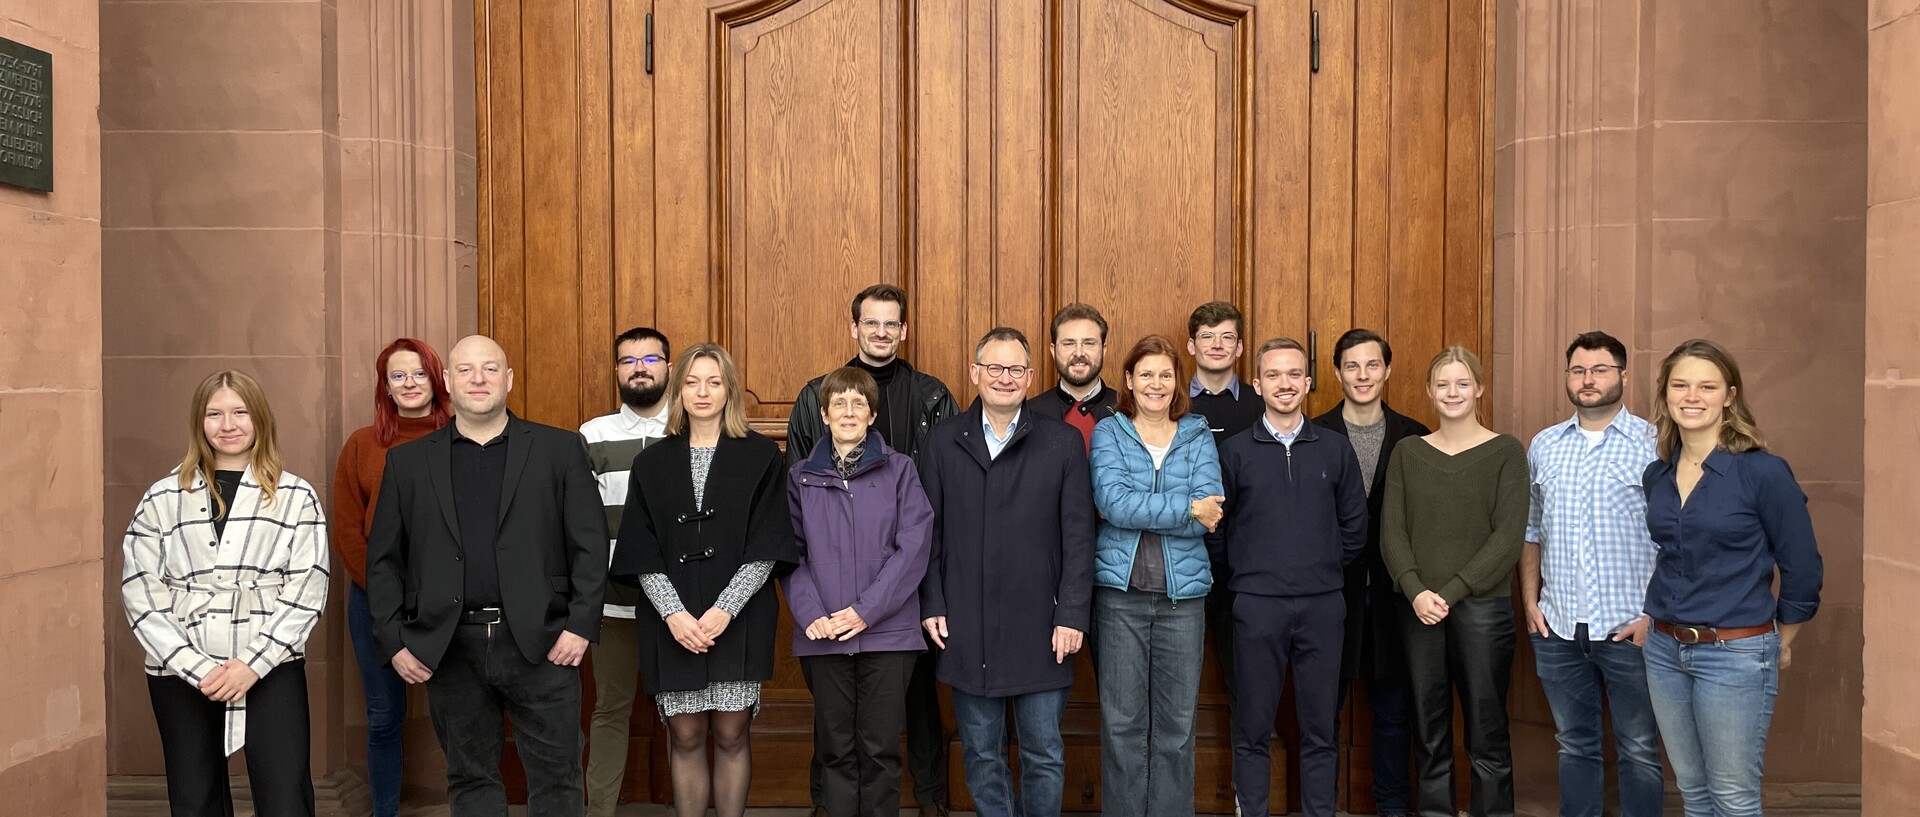 Gruppenbild des Lehrstuhls für Zeitgeschichte auf dem Ehrenhof der Universität Mannheim